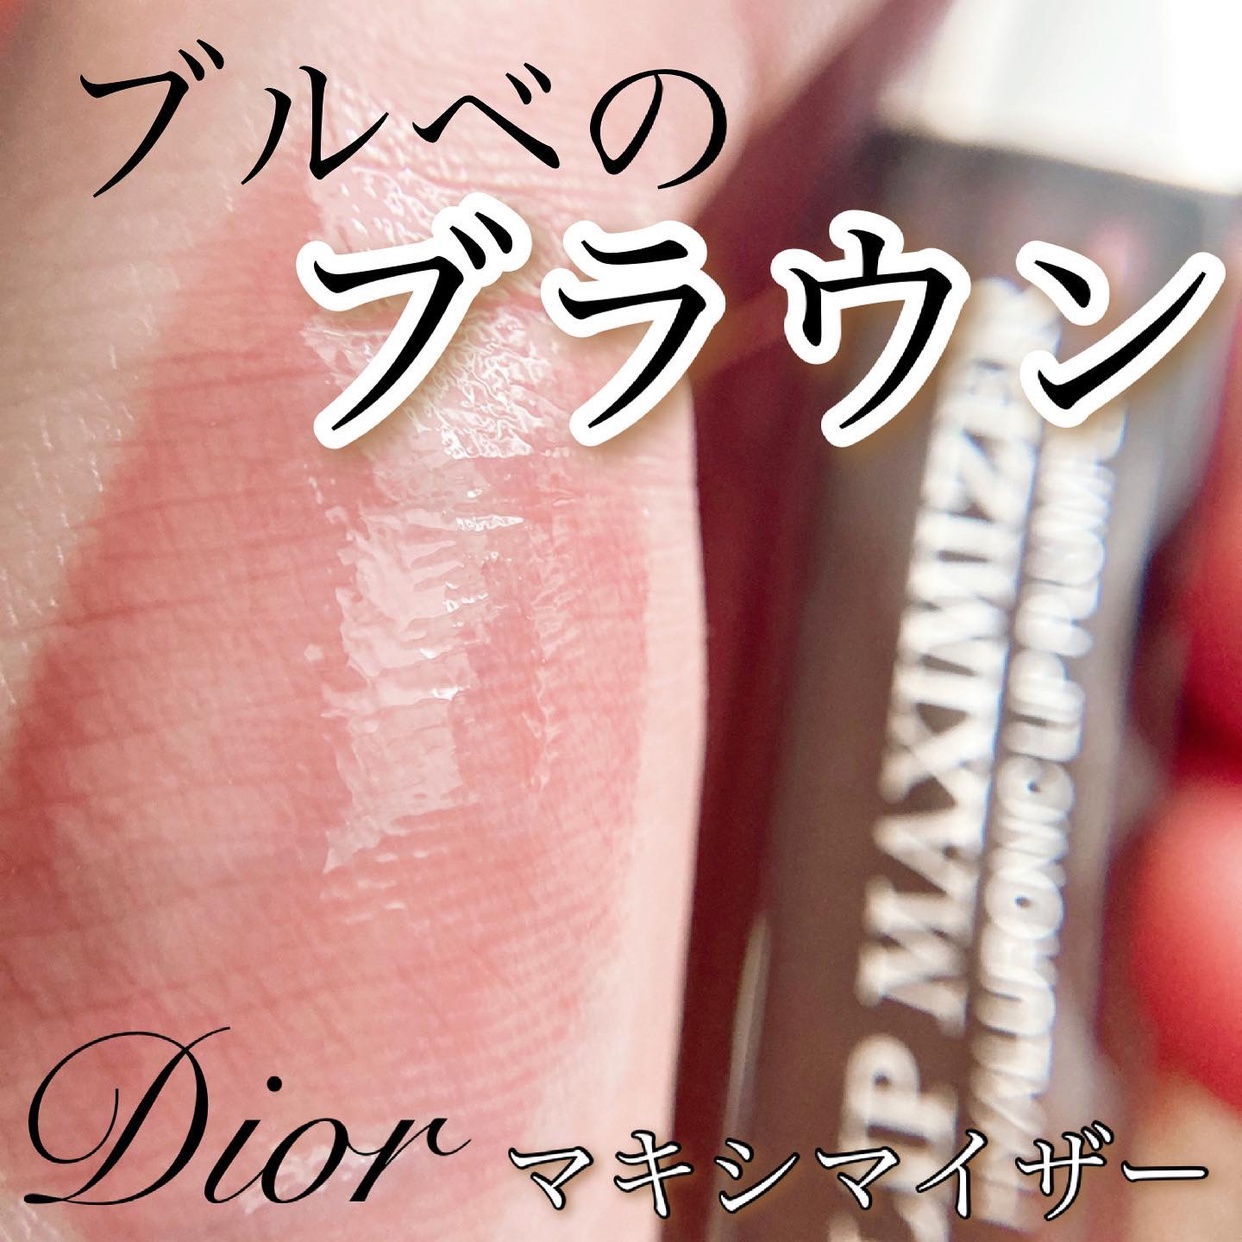 Dior(ディオール) アディクト リップ マキシマイザーを使ったyunaさんのクチコミ画像1